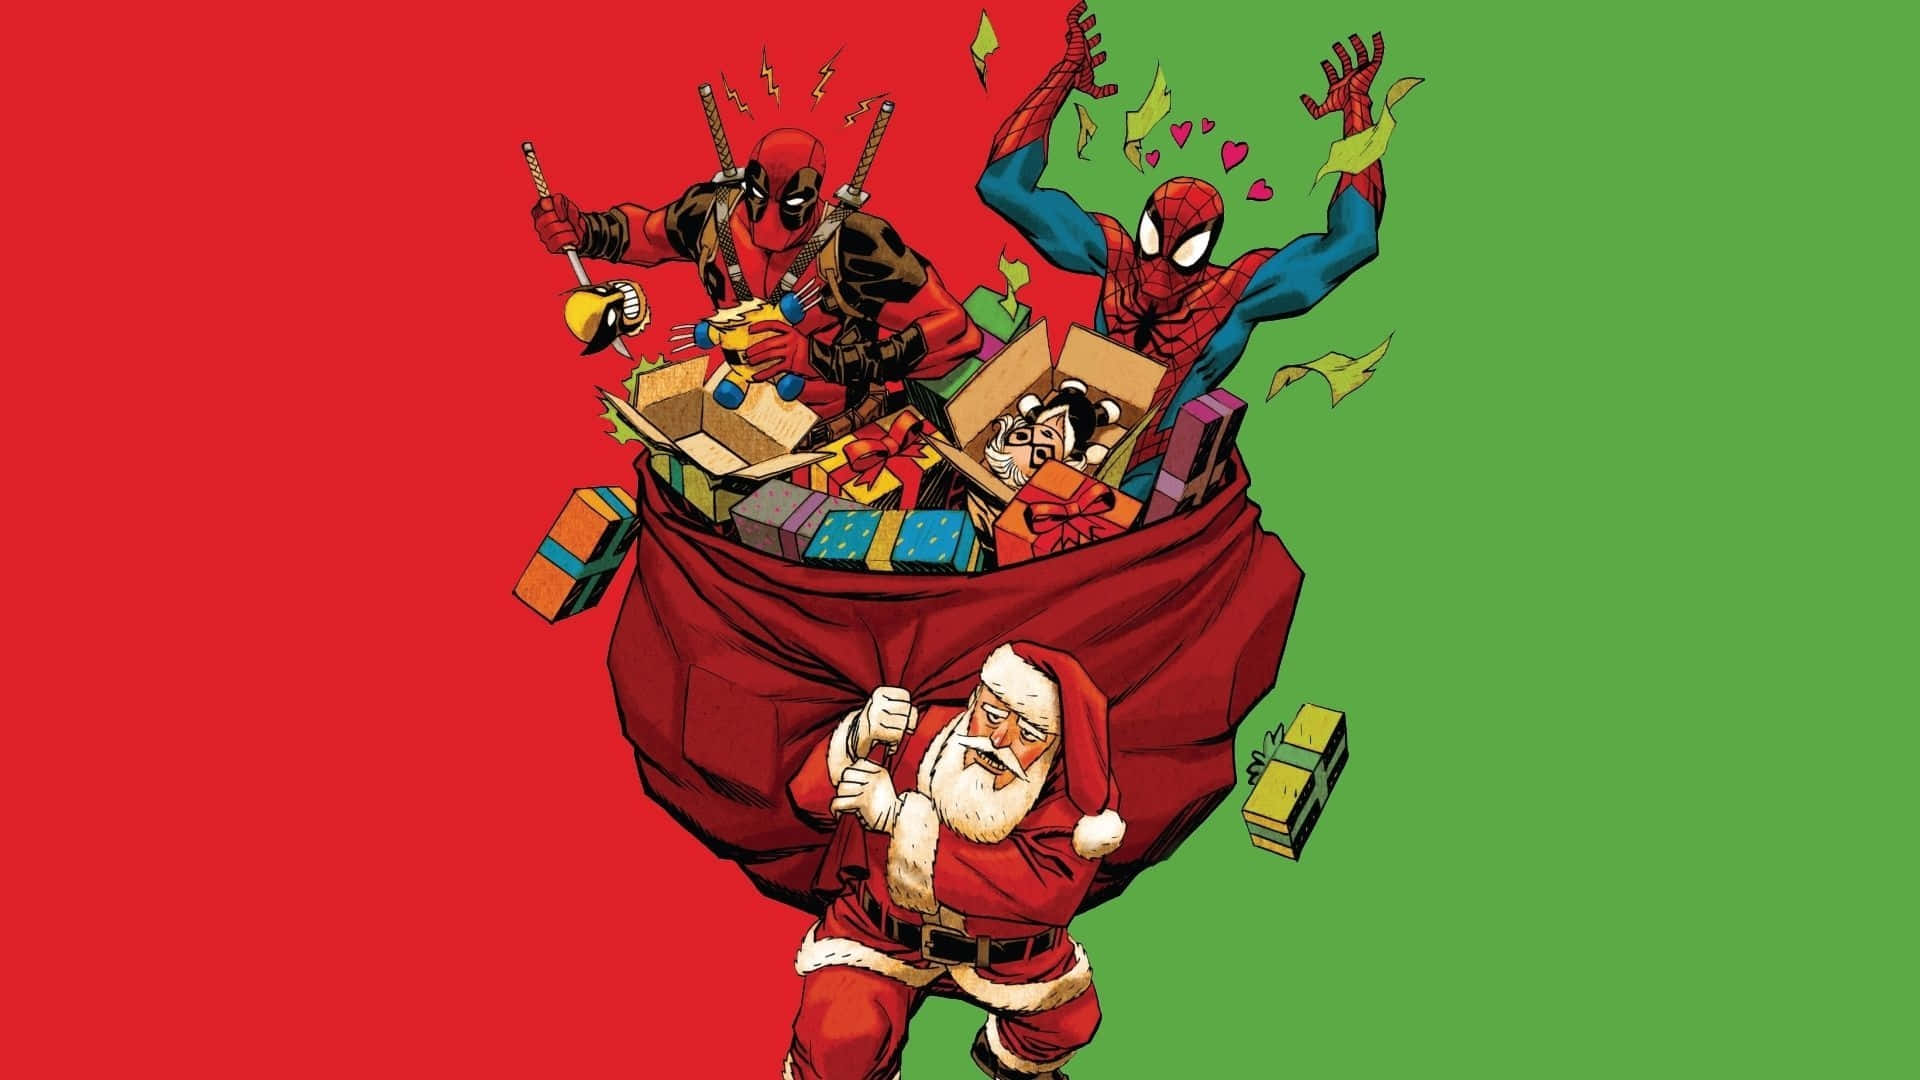 Marvelweihnachten Spiderman Und Deadpool Als Santa Wallpaper